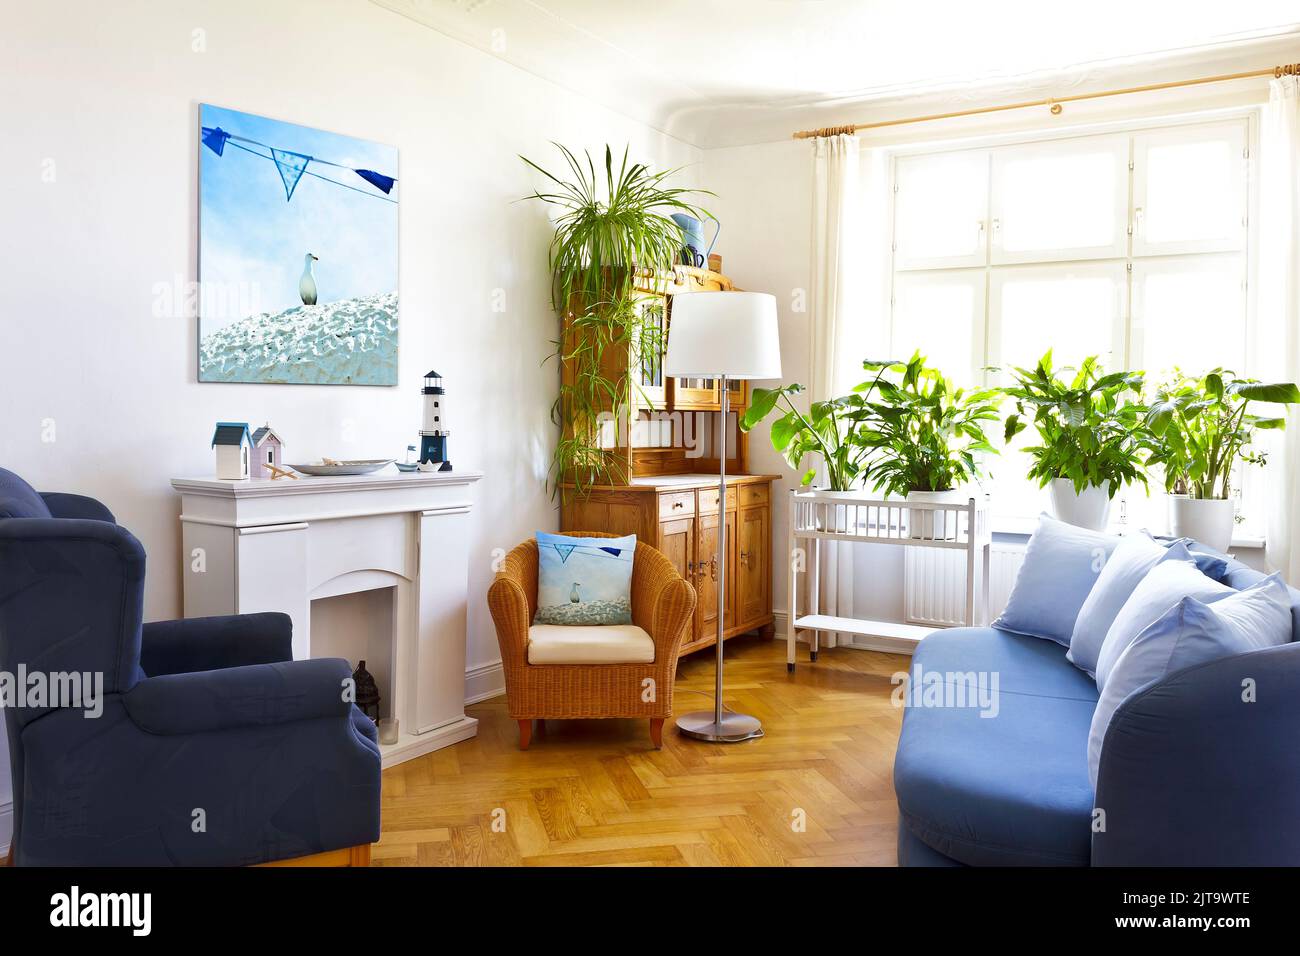 Maßgefertigtes Raumdeko-Konzept: Wohnzimmer mit einem Leinwanddruck eines maritimen Urlaubsfotos und einem Wurfkissen des gleichen Bildes. Stockfoto